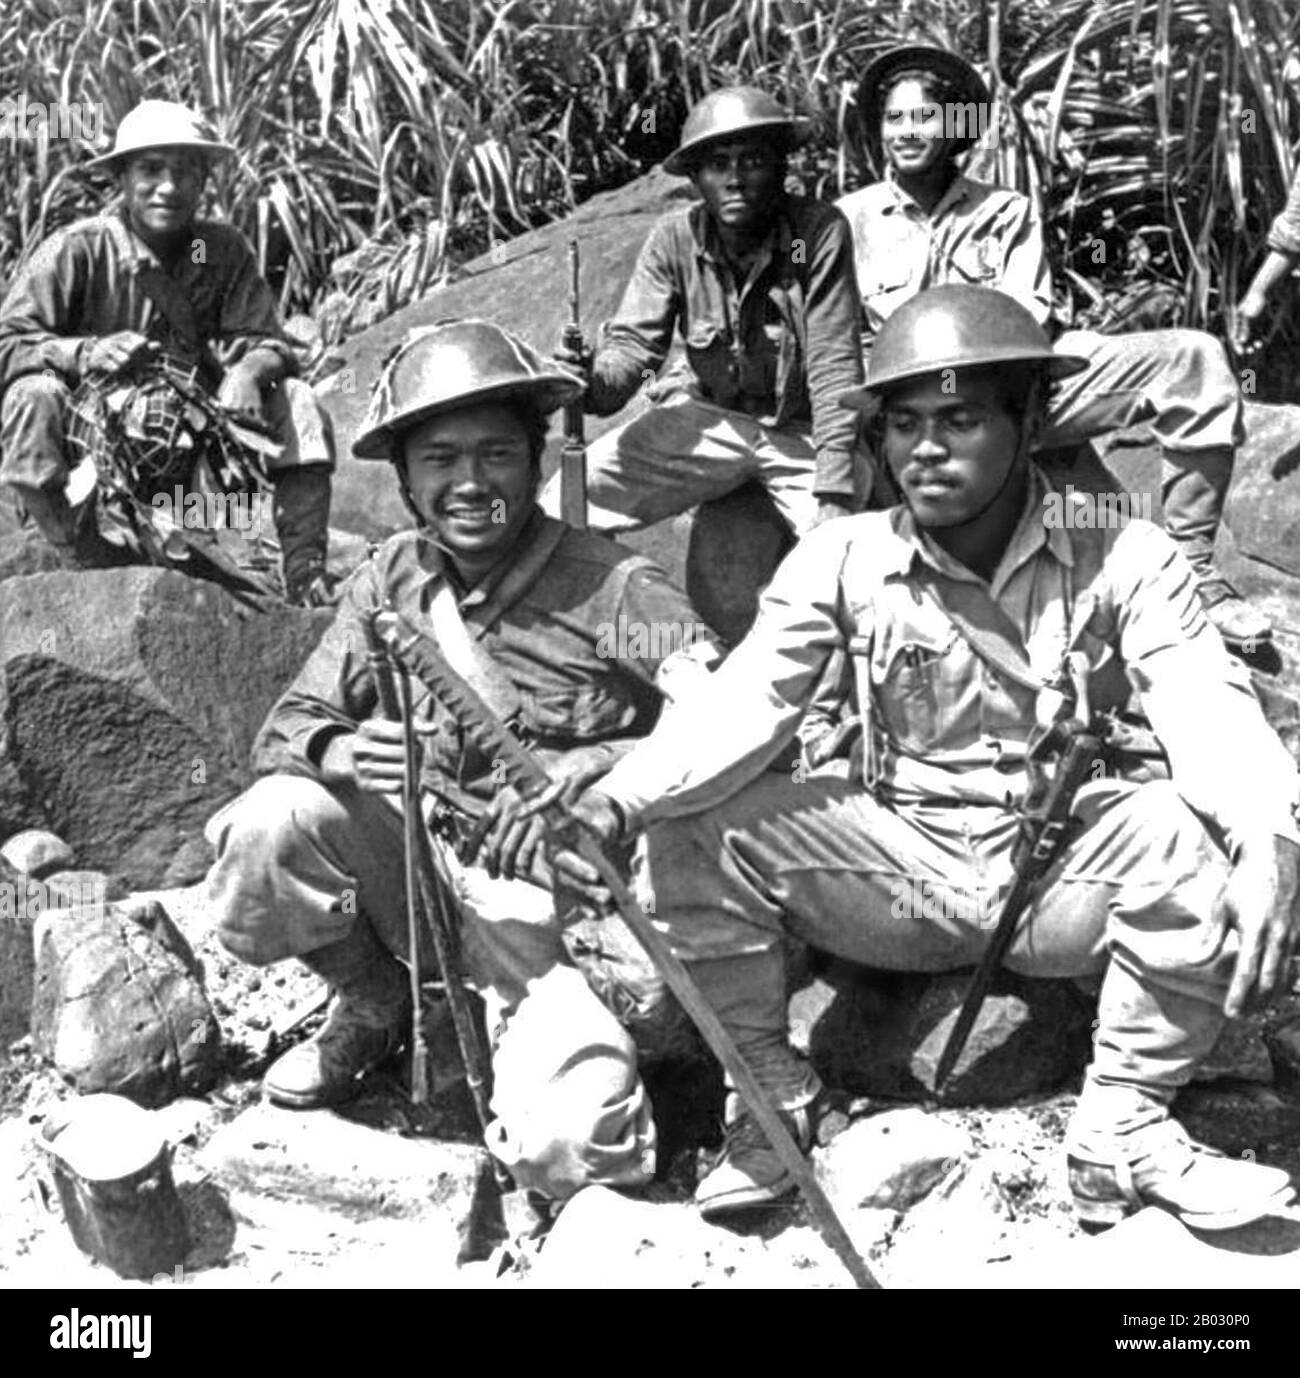 Die Schlacht von Bataan stellte die intensivste Phase der Invasion der Philippinen durch das imperiale Japan während des zweiten Weltkriegs dar Im Januar 1942 marschierten Truppen der Kaiserlich japanischen Armee und Marine zusammen mit mehreren Inseln im philippinischen Archipel nach der Bombardierung des amerikanischen Marinestützpunktes in Pearl Harbor in Luzon ein. Der Oberbefehlshaber aller philippinischen und amerikanischen Streitkräfte auf den Inseln, General Douglas MacArthur, konsolidierte alle seine in Luzon stationierten Einheiten auf der Halbinsel Batan, um gegen die japanischen Invasoren zu kämpfen. Bis zu diesem Zeitpunkt kontrollierten die Japaner fast ganz Südostasien. Th Stockfoto